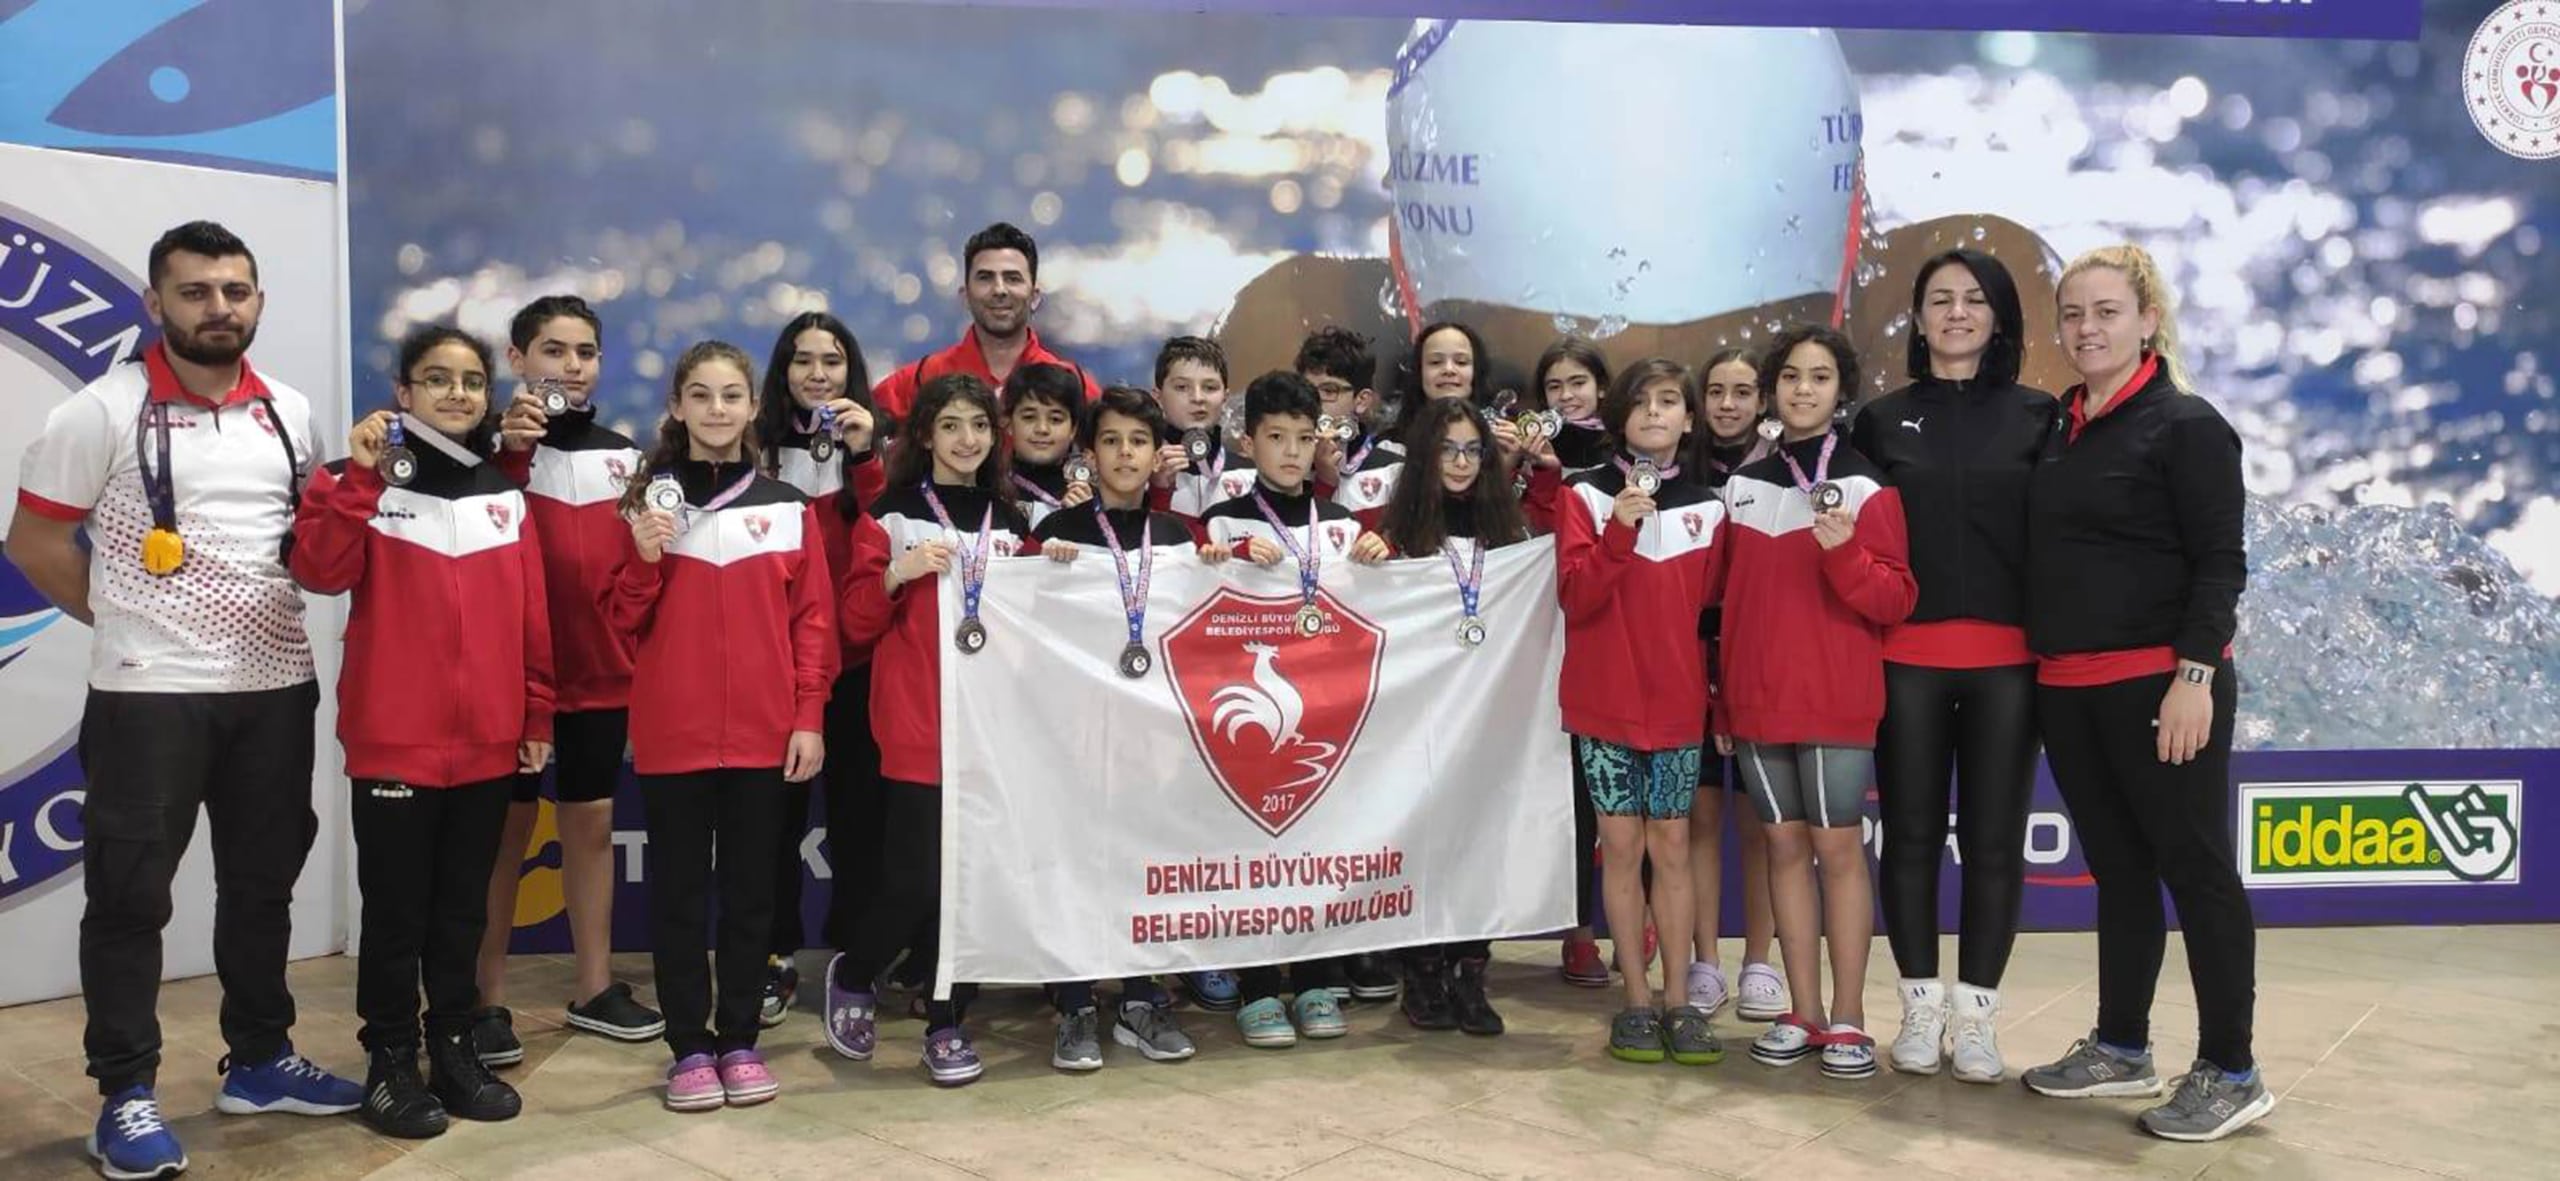 Denizli Buyuksehir Belediyespor Yuzme Takimi scaled - Büyükşehir'de Türkiye Şampiyonluğu sevinci